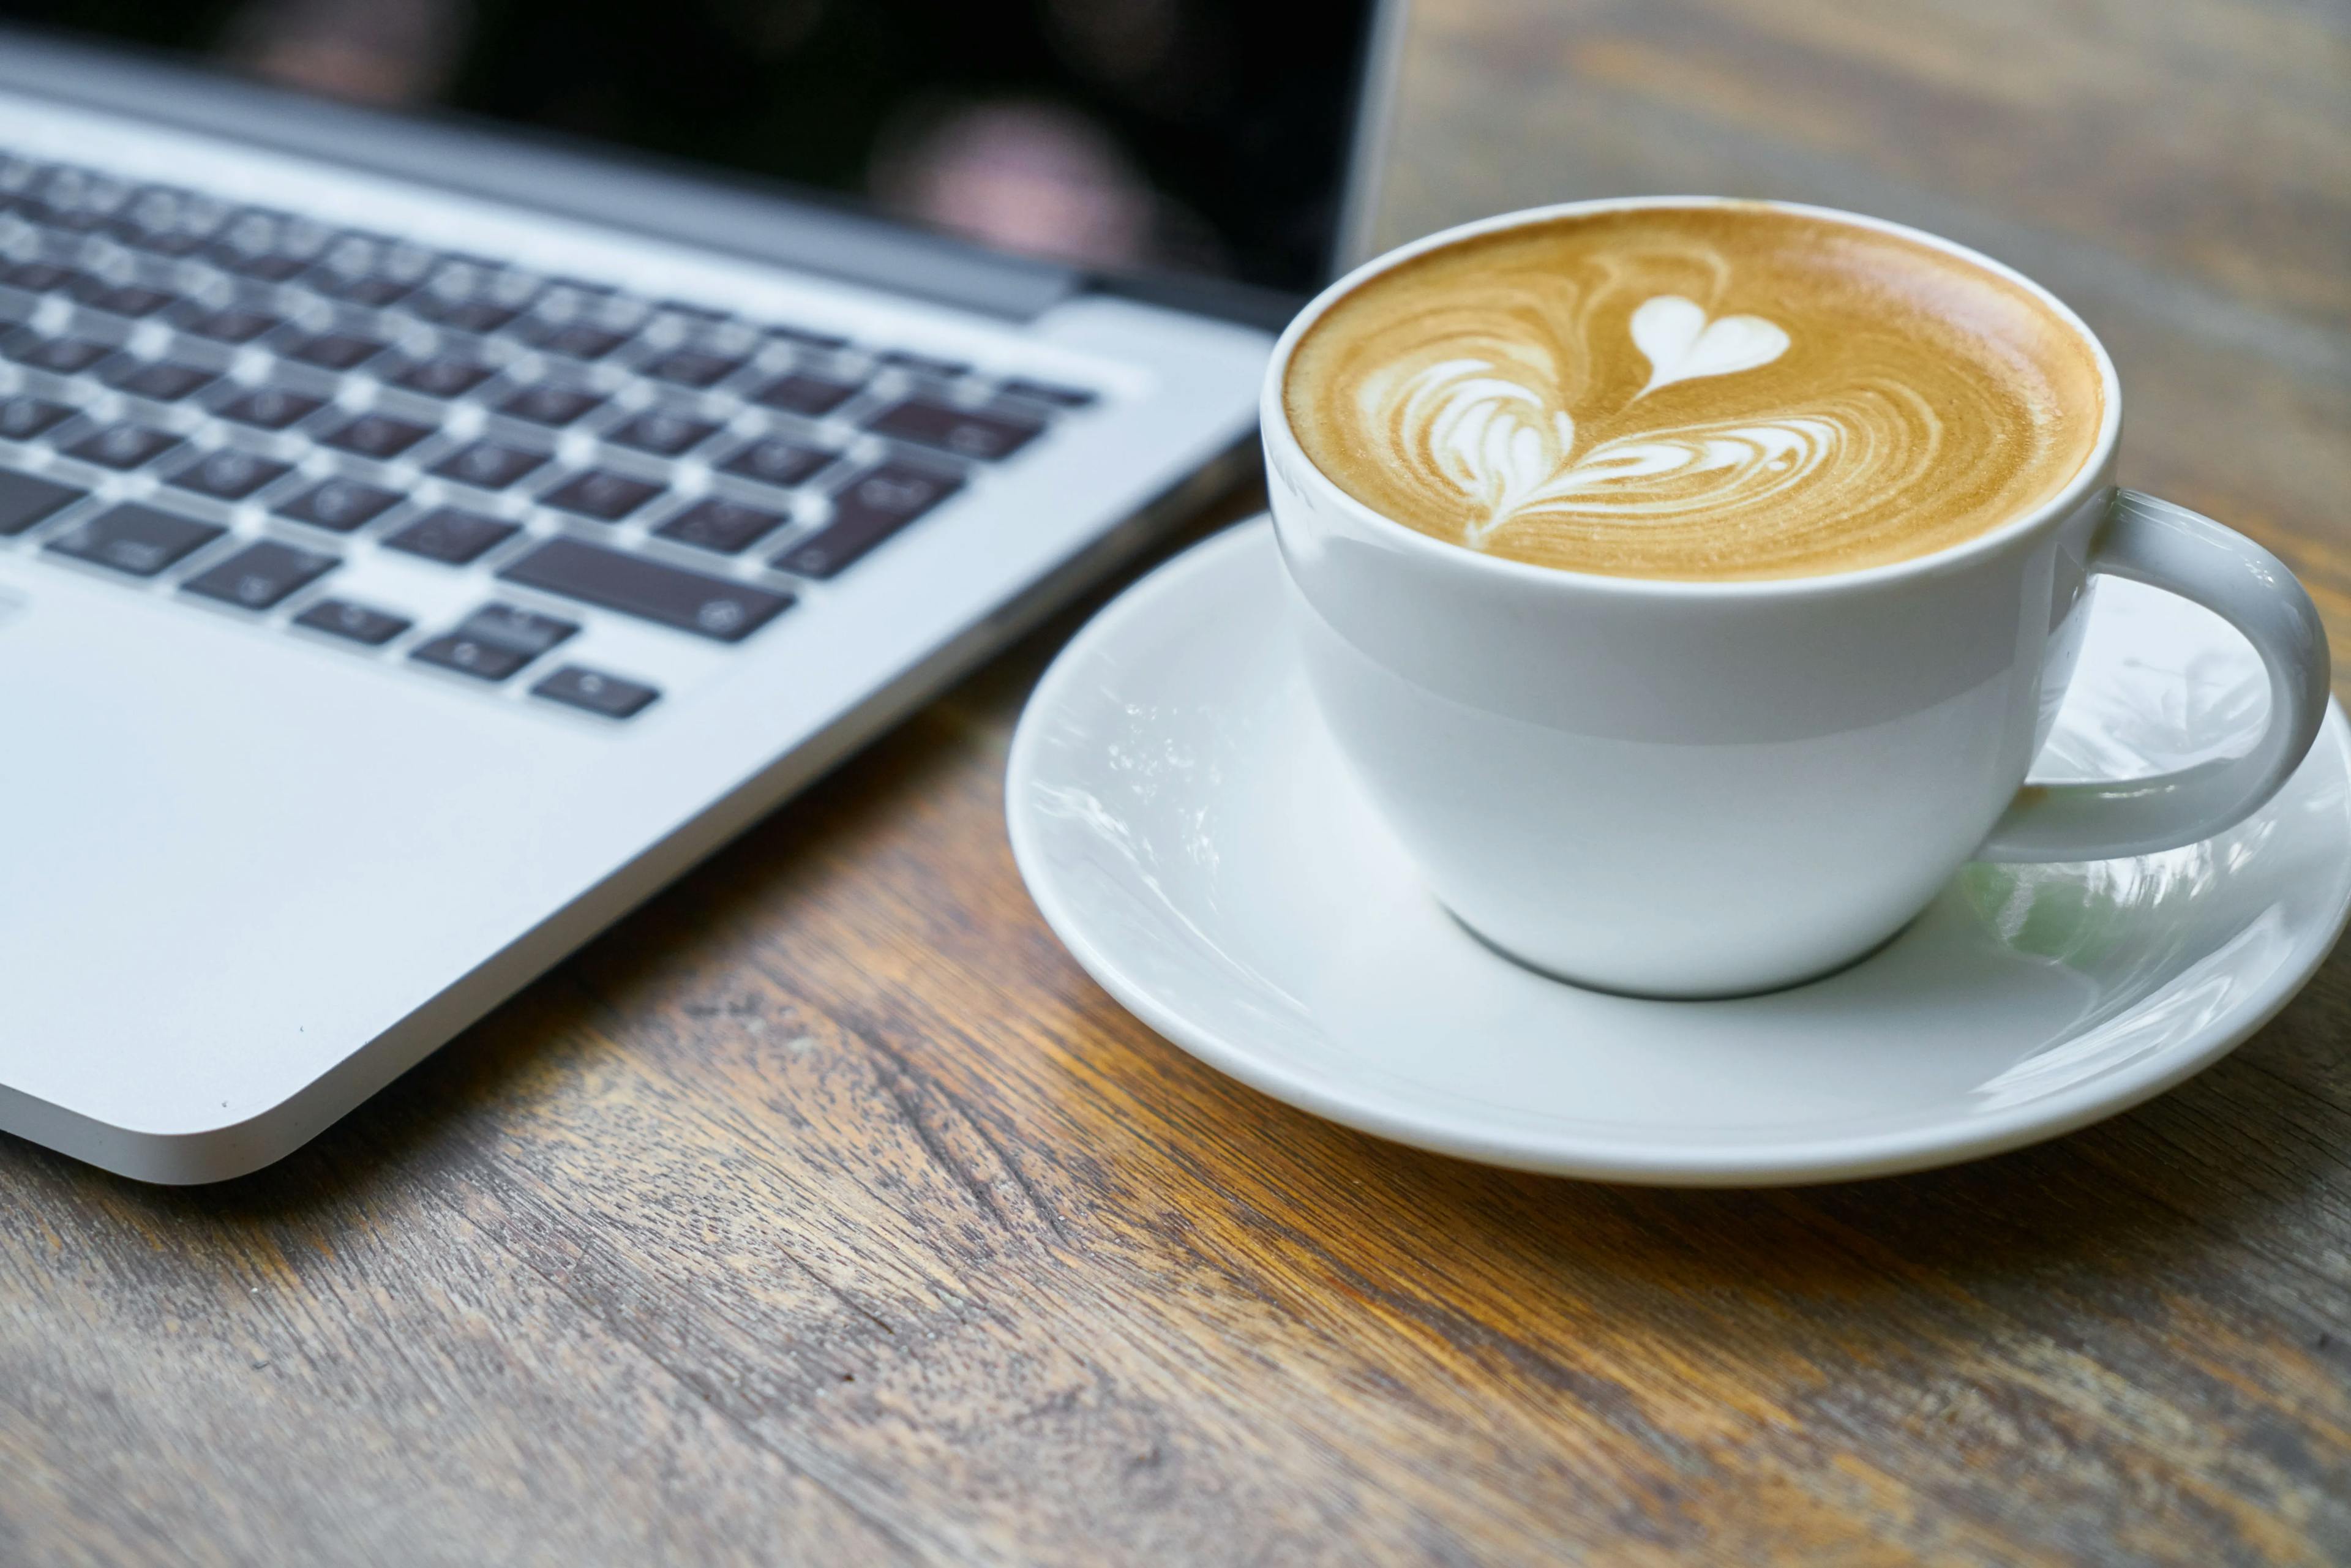 Nærbilde av Macbook med en kaffekopp ved siden av.